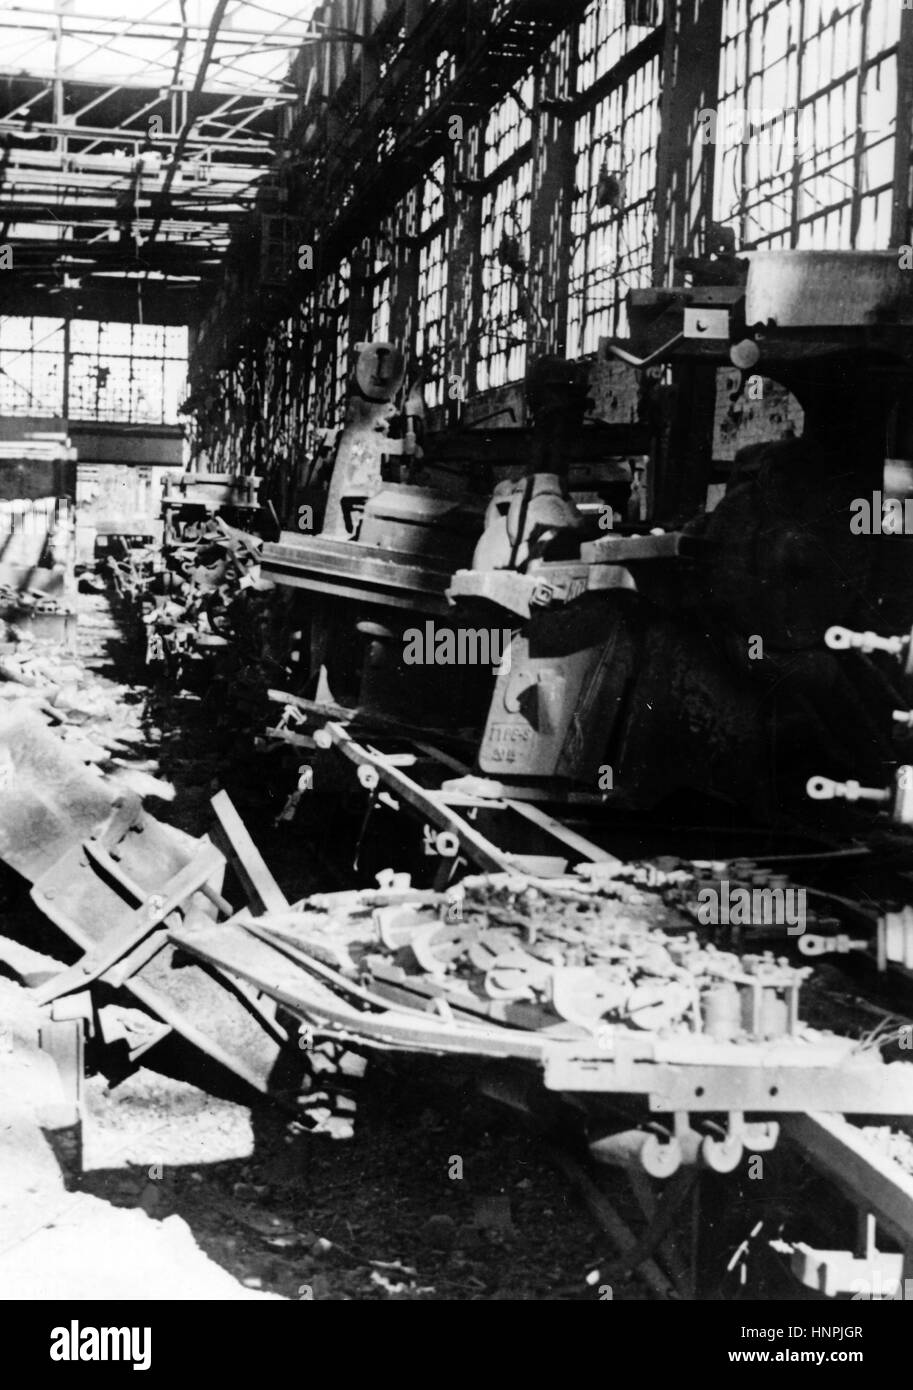 L'image de propagande nazie montre le tracteur et l'usine de chars 'Dzerzhinsky' détruits dans le nord de Stalingrad (aujourd'hui Volgograd). Pris en novembre 1942 après avoir été capturé par la Wehrmacht allemande. Un journaliste de l'État nazi a écrit au contraire de la photo de 07.11.1942, « l'usine de tracteurs détruite dans le fief de Stalingrad. Le système de transformateur de l'usine. » Fotoarchiv für Zeitgeschichte - PAS DE SERVICE DE FIL - | utilisation dans le monde entier Banque D'Images